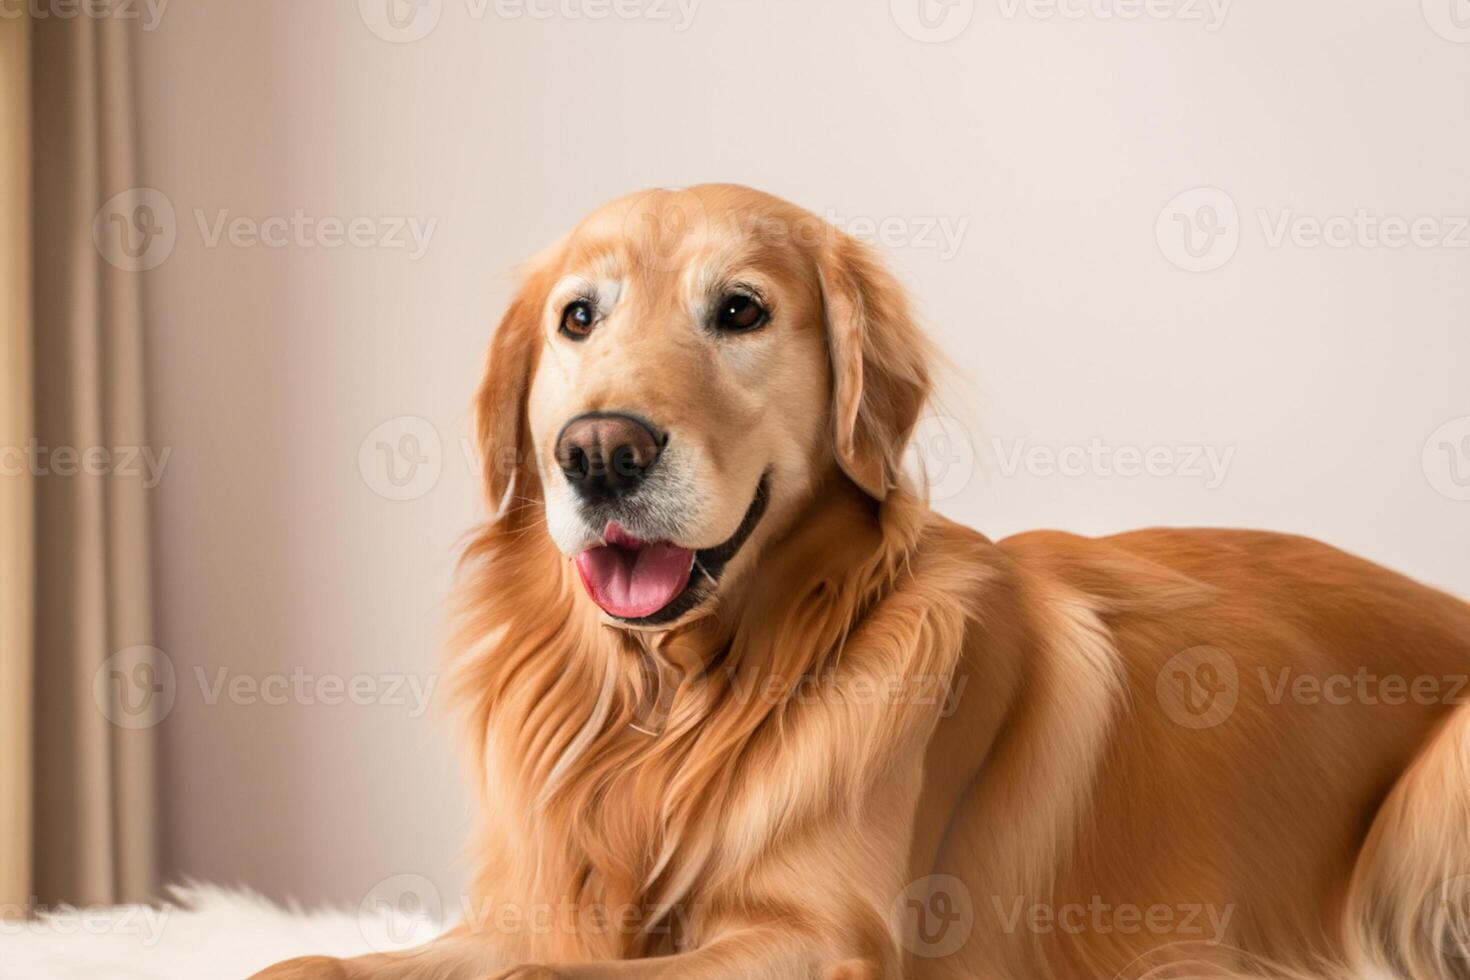 capturer le réconfortant expression de une magnifique d'or retriever chien, une image de inconditionnel l'amour et joyeux camaraderie photo